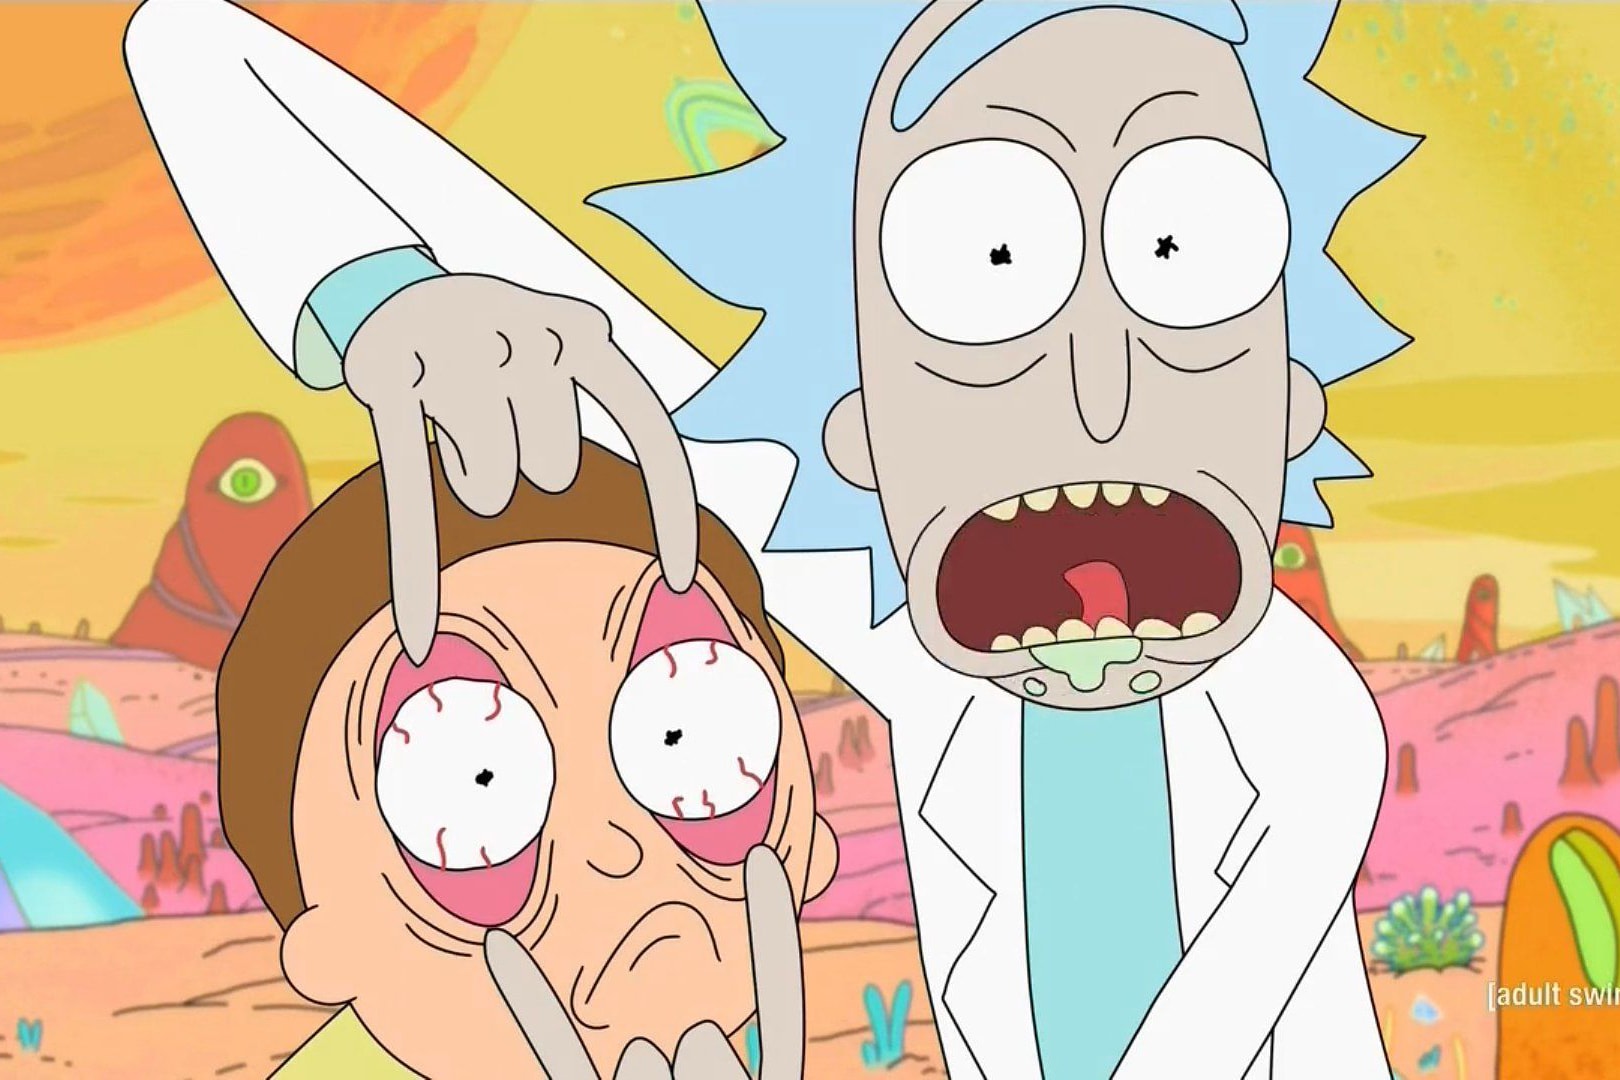 Rick et Morty 70 Episodes renouvelé